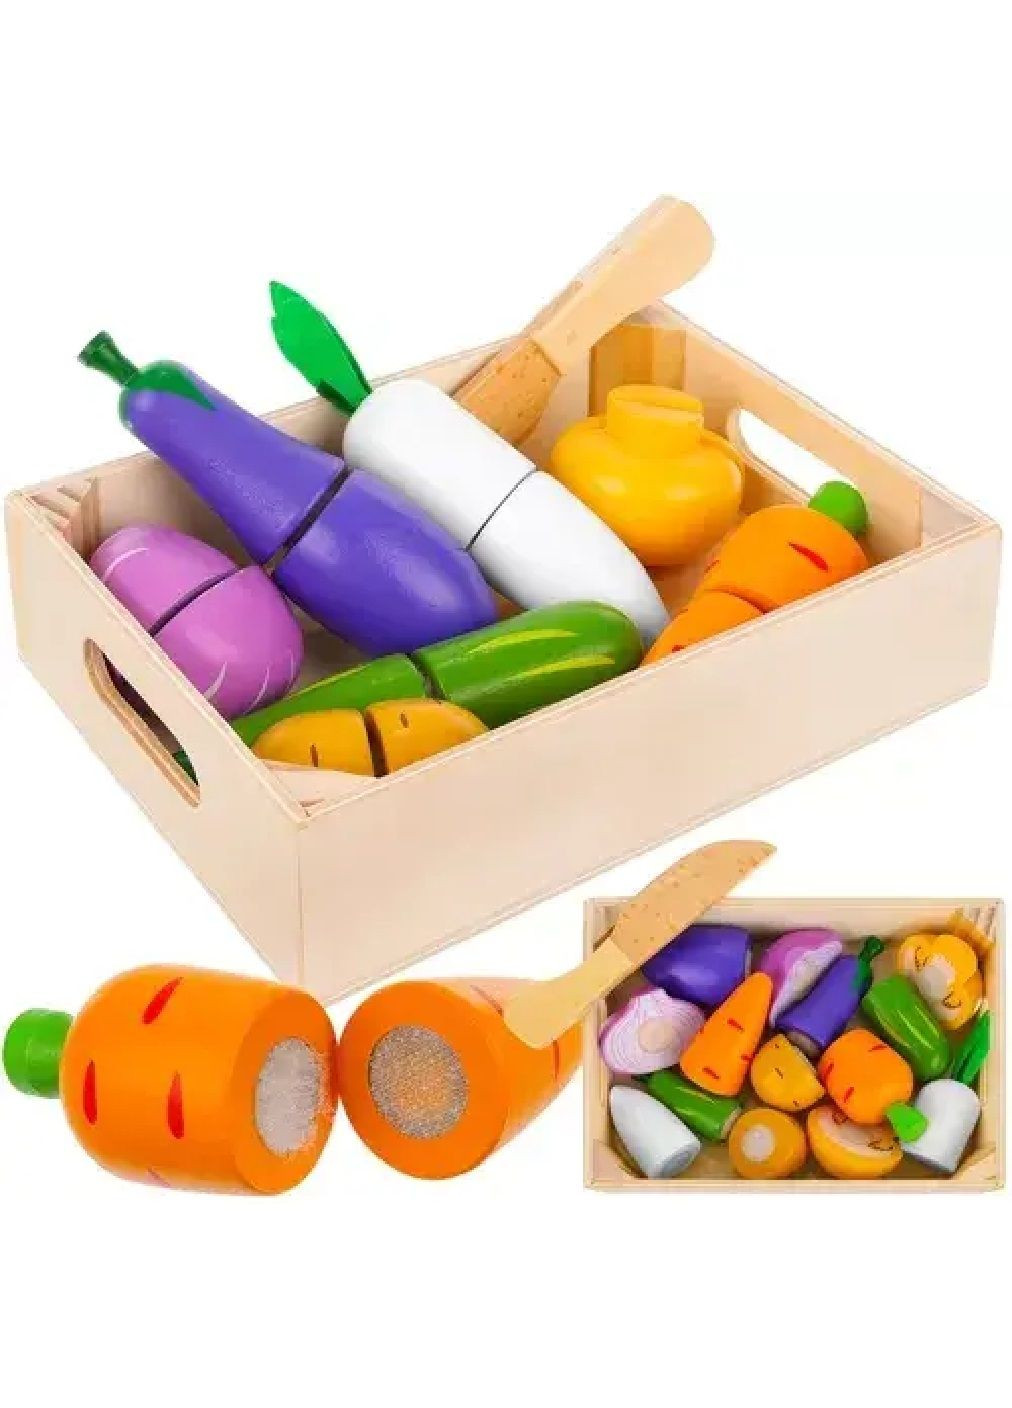 Дитячий дерев'яний комплект набір овочів фруктів на липучці для нарізування в ящику 9 елементів 18х12,5х4,4 см (476857-Prob) Unbranded (292111613)